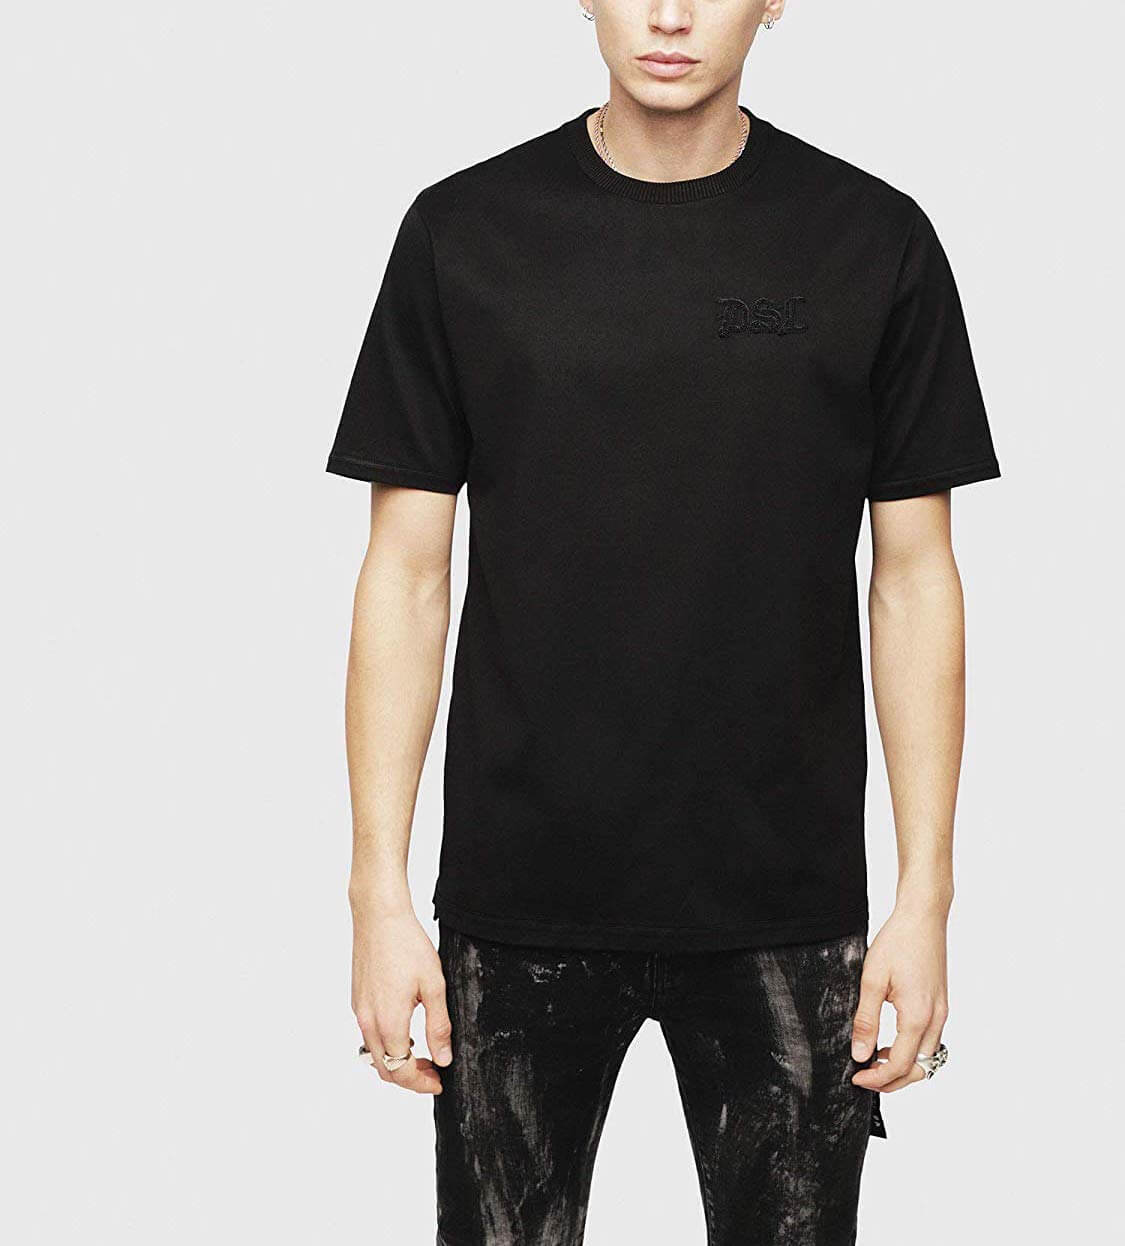 黒tシャツ コーデ特集 インナー使いでも高ポテンシャルを発揮するデキるやつ メンズファッションメディア Iicfiicf 男前研究所